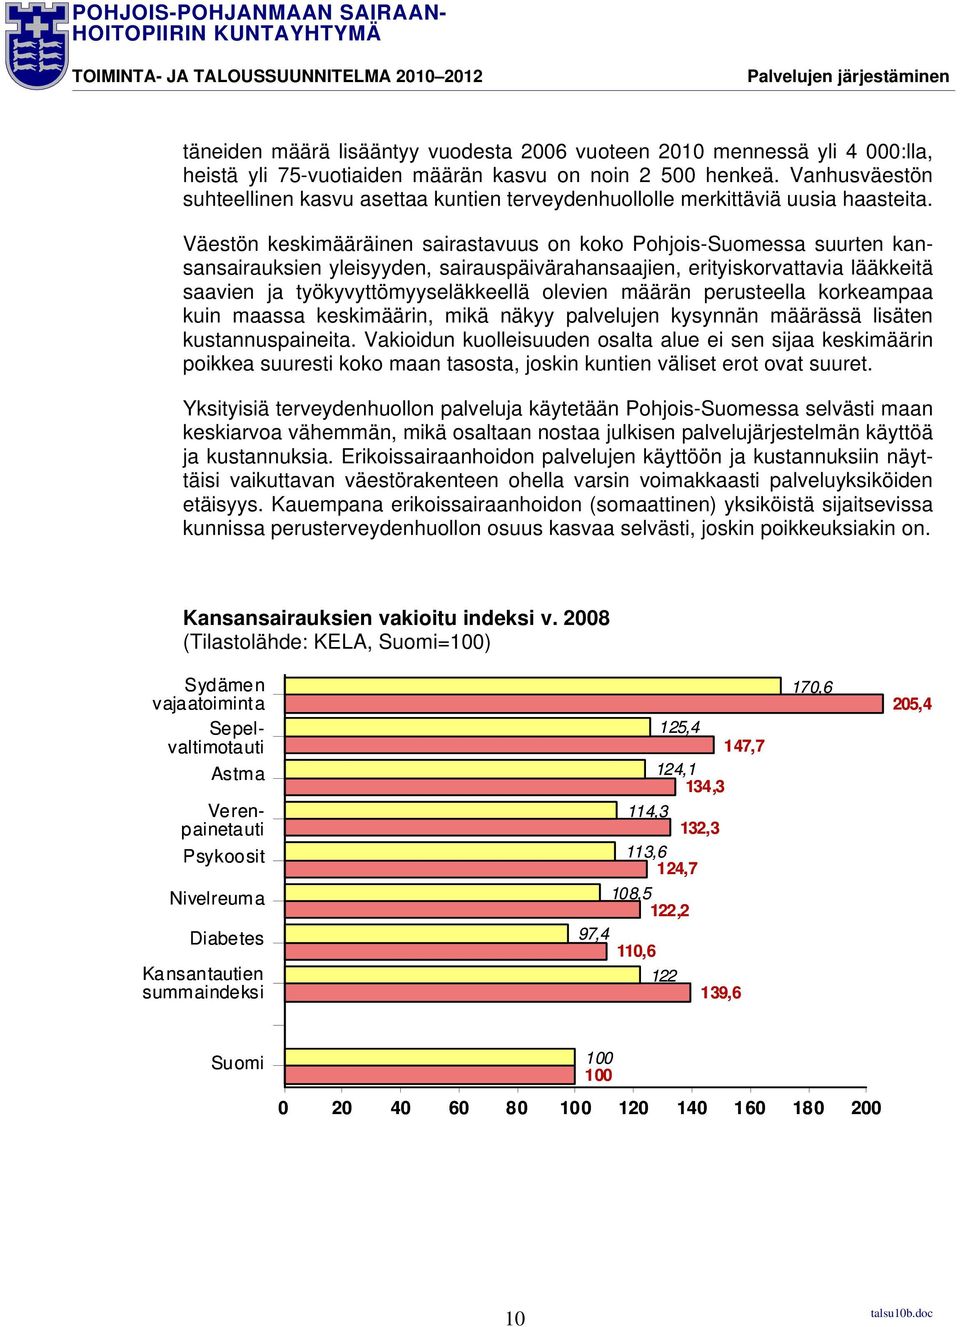 Väestön keskimääräinen sairastavuus on koko Pohjois-Suomessa suurten kansansairauksien yleisyyden, sairauspäivärahansaajien, erityiskorvattavia lääkkeitä saavien ja työkyvyttömyyseläkkeellä olevien